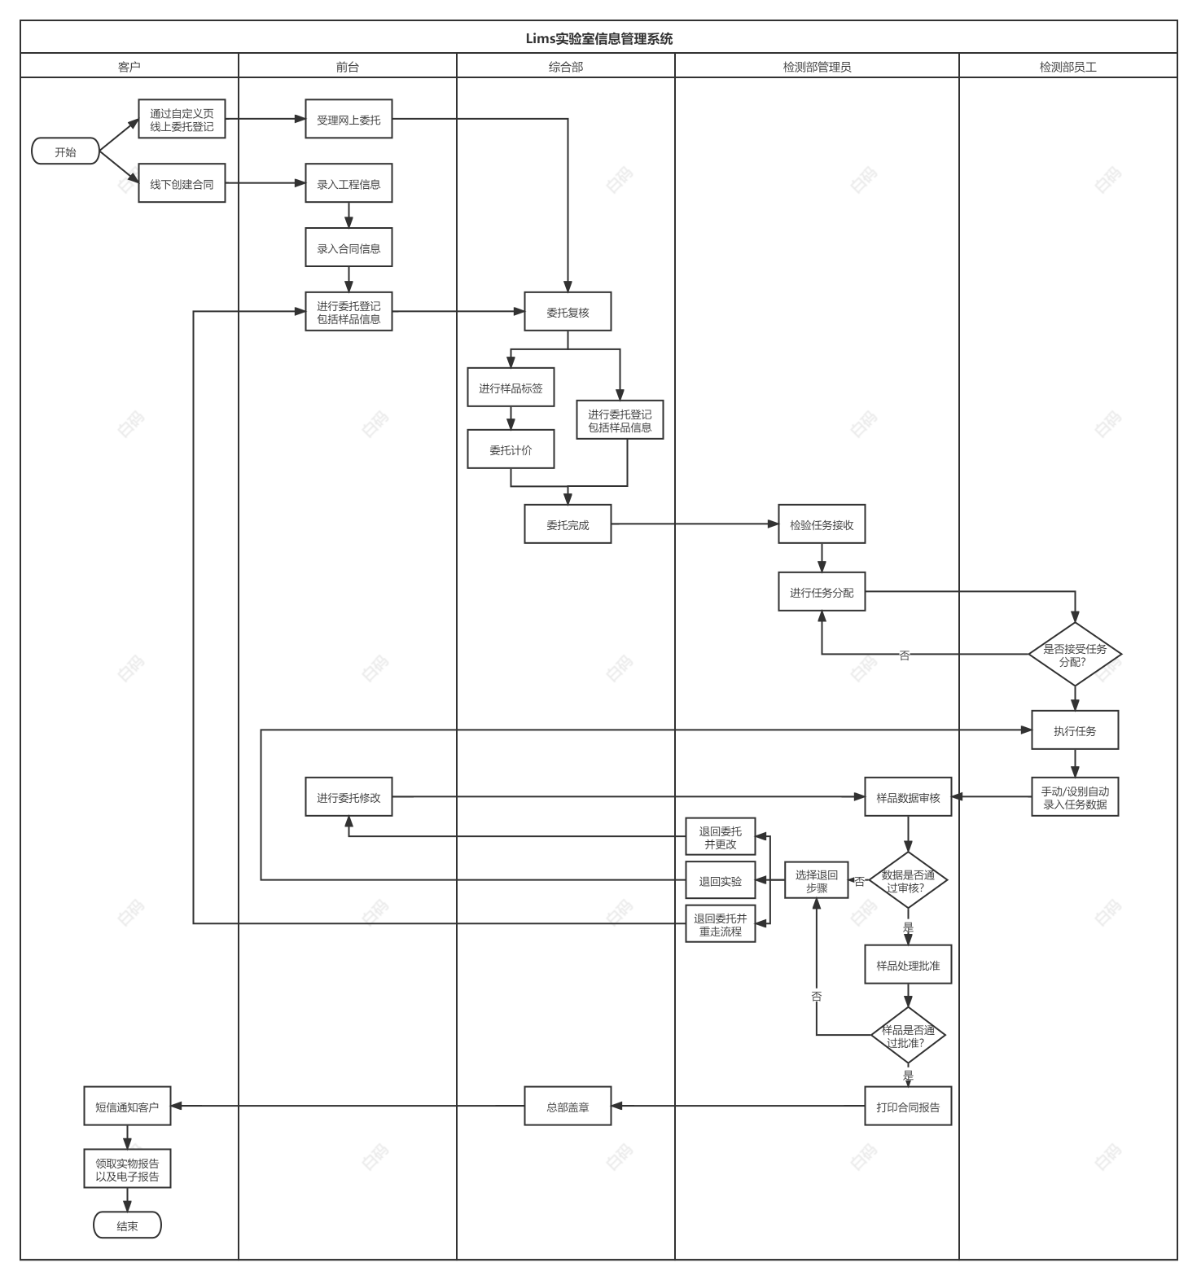 白码lims实验室管理系统功能流程图